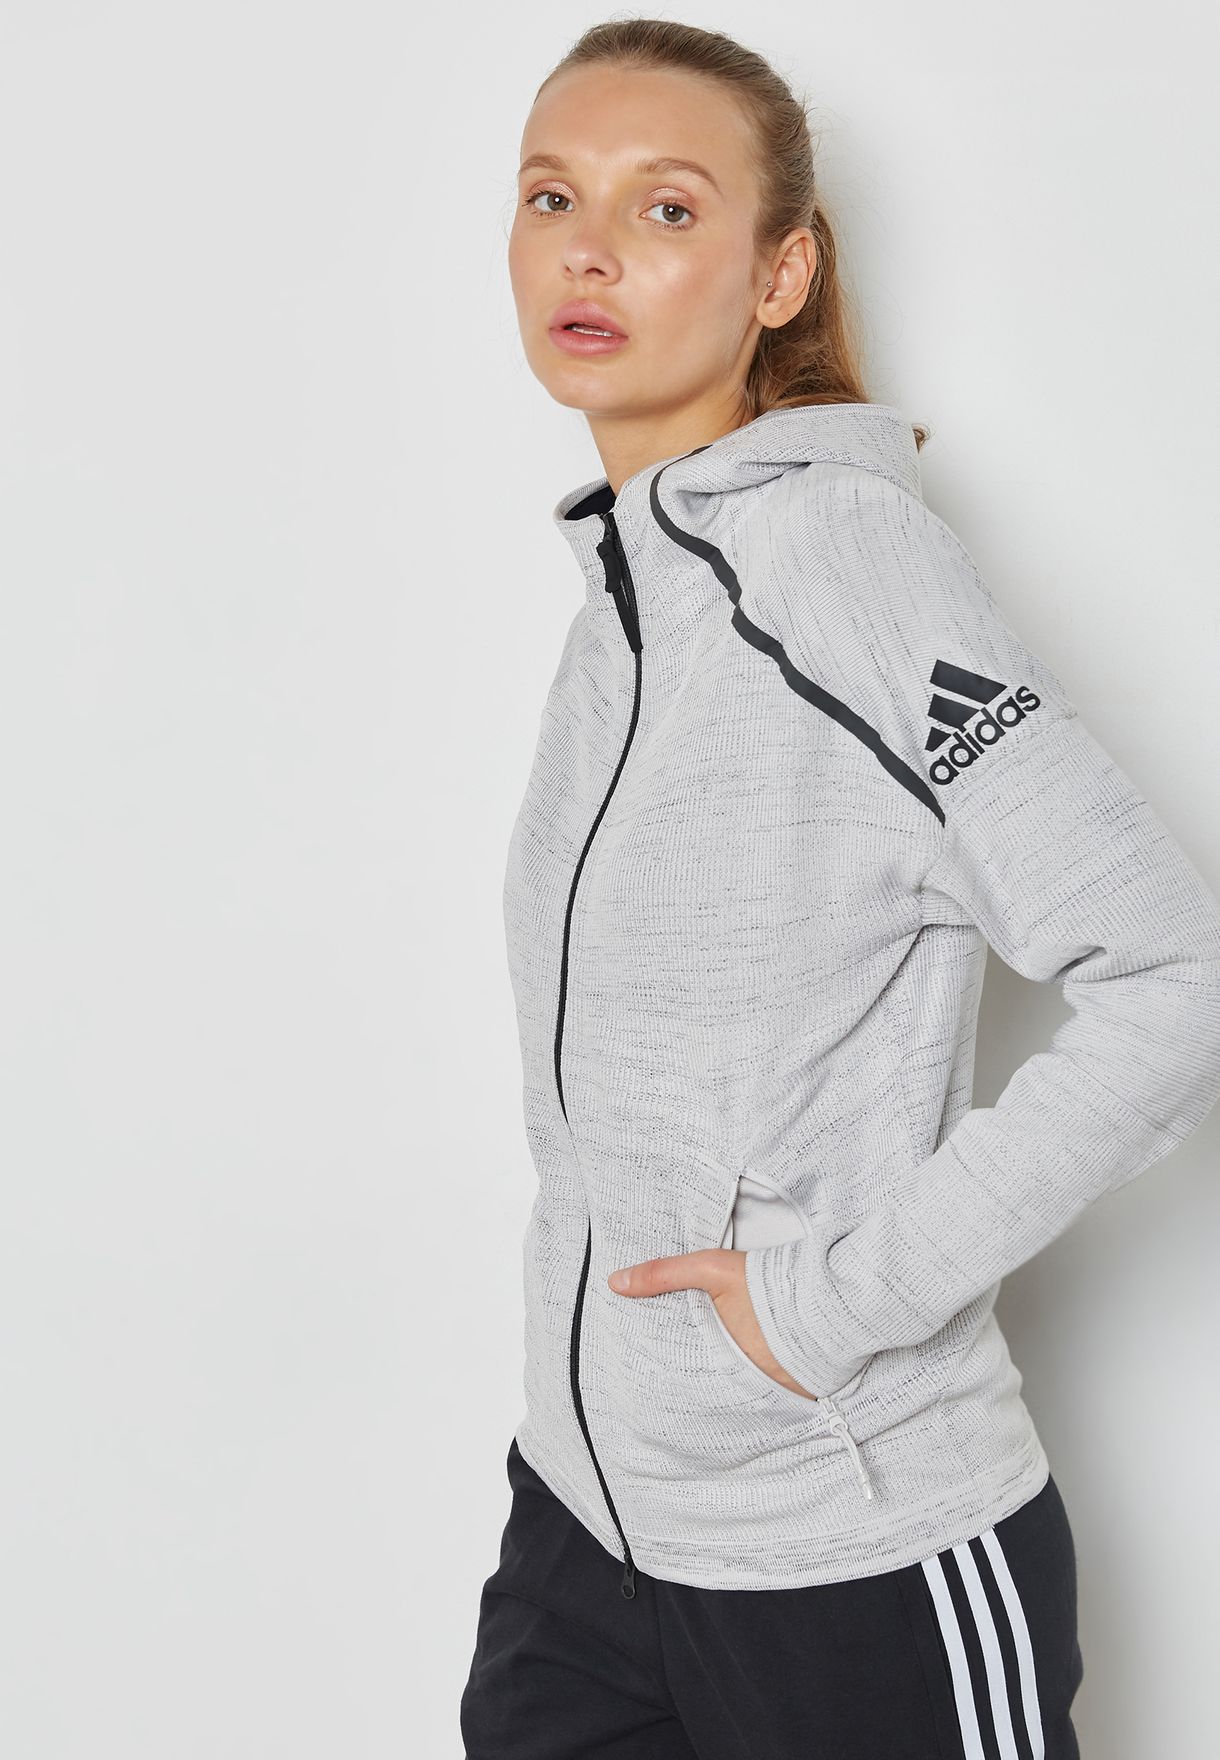 adidas zip up hoodie womens grey